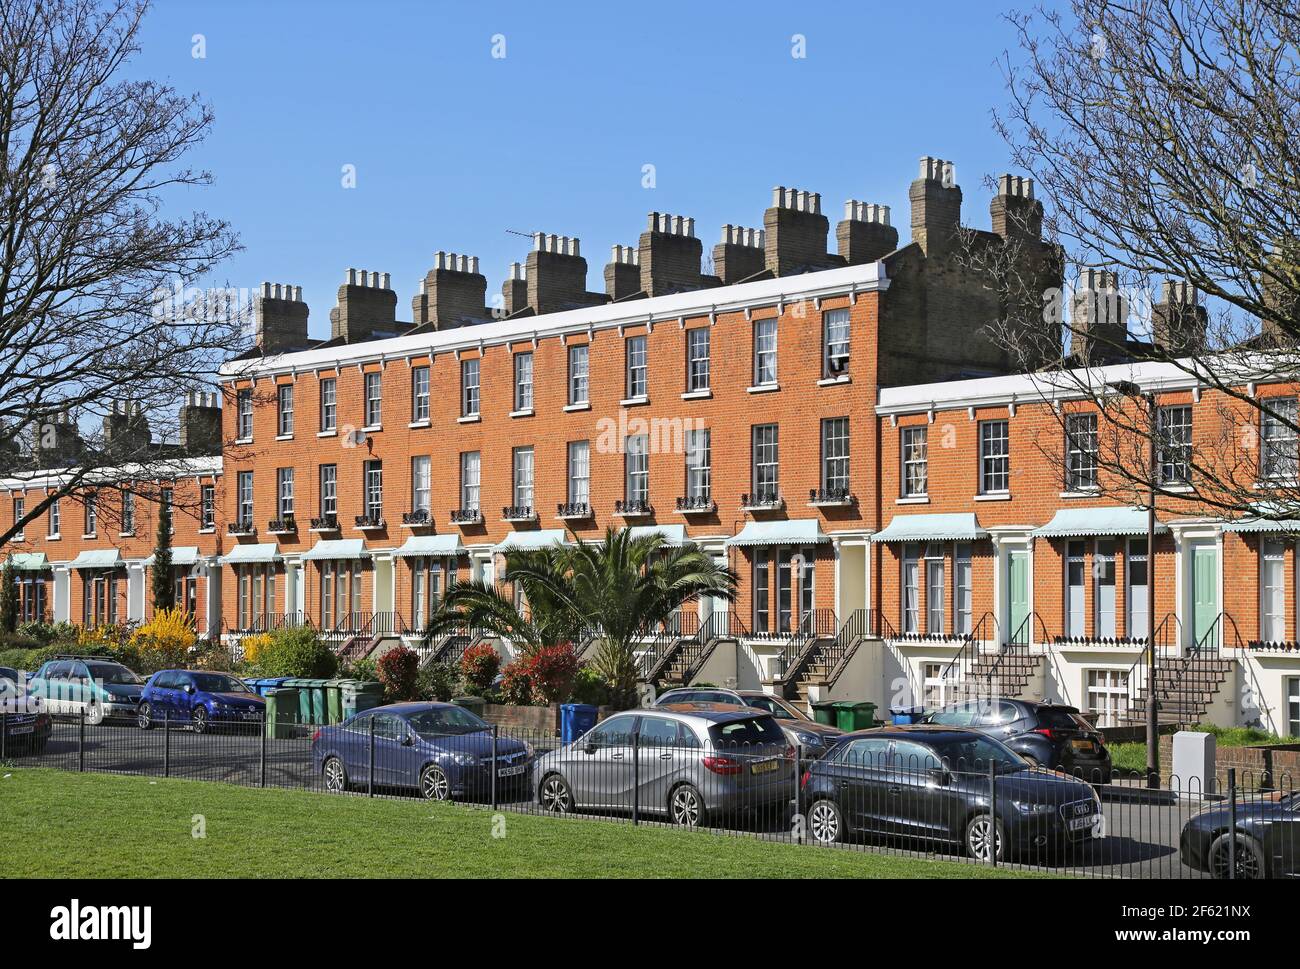 Clifton Crescent, Peckham, Londres, Royaume-Uni. Une célèbre rangée de maisons en terrasse victorienne de l'époque Regency. Menacé de démolition dans les années 1970 - maintenant inscrit. Banque D'Images